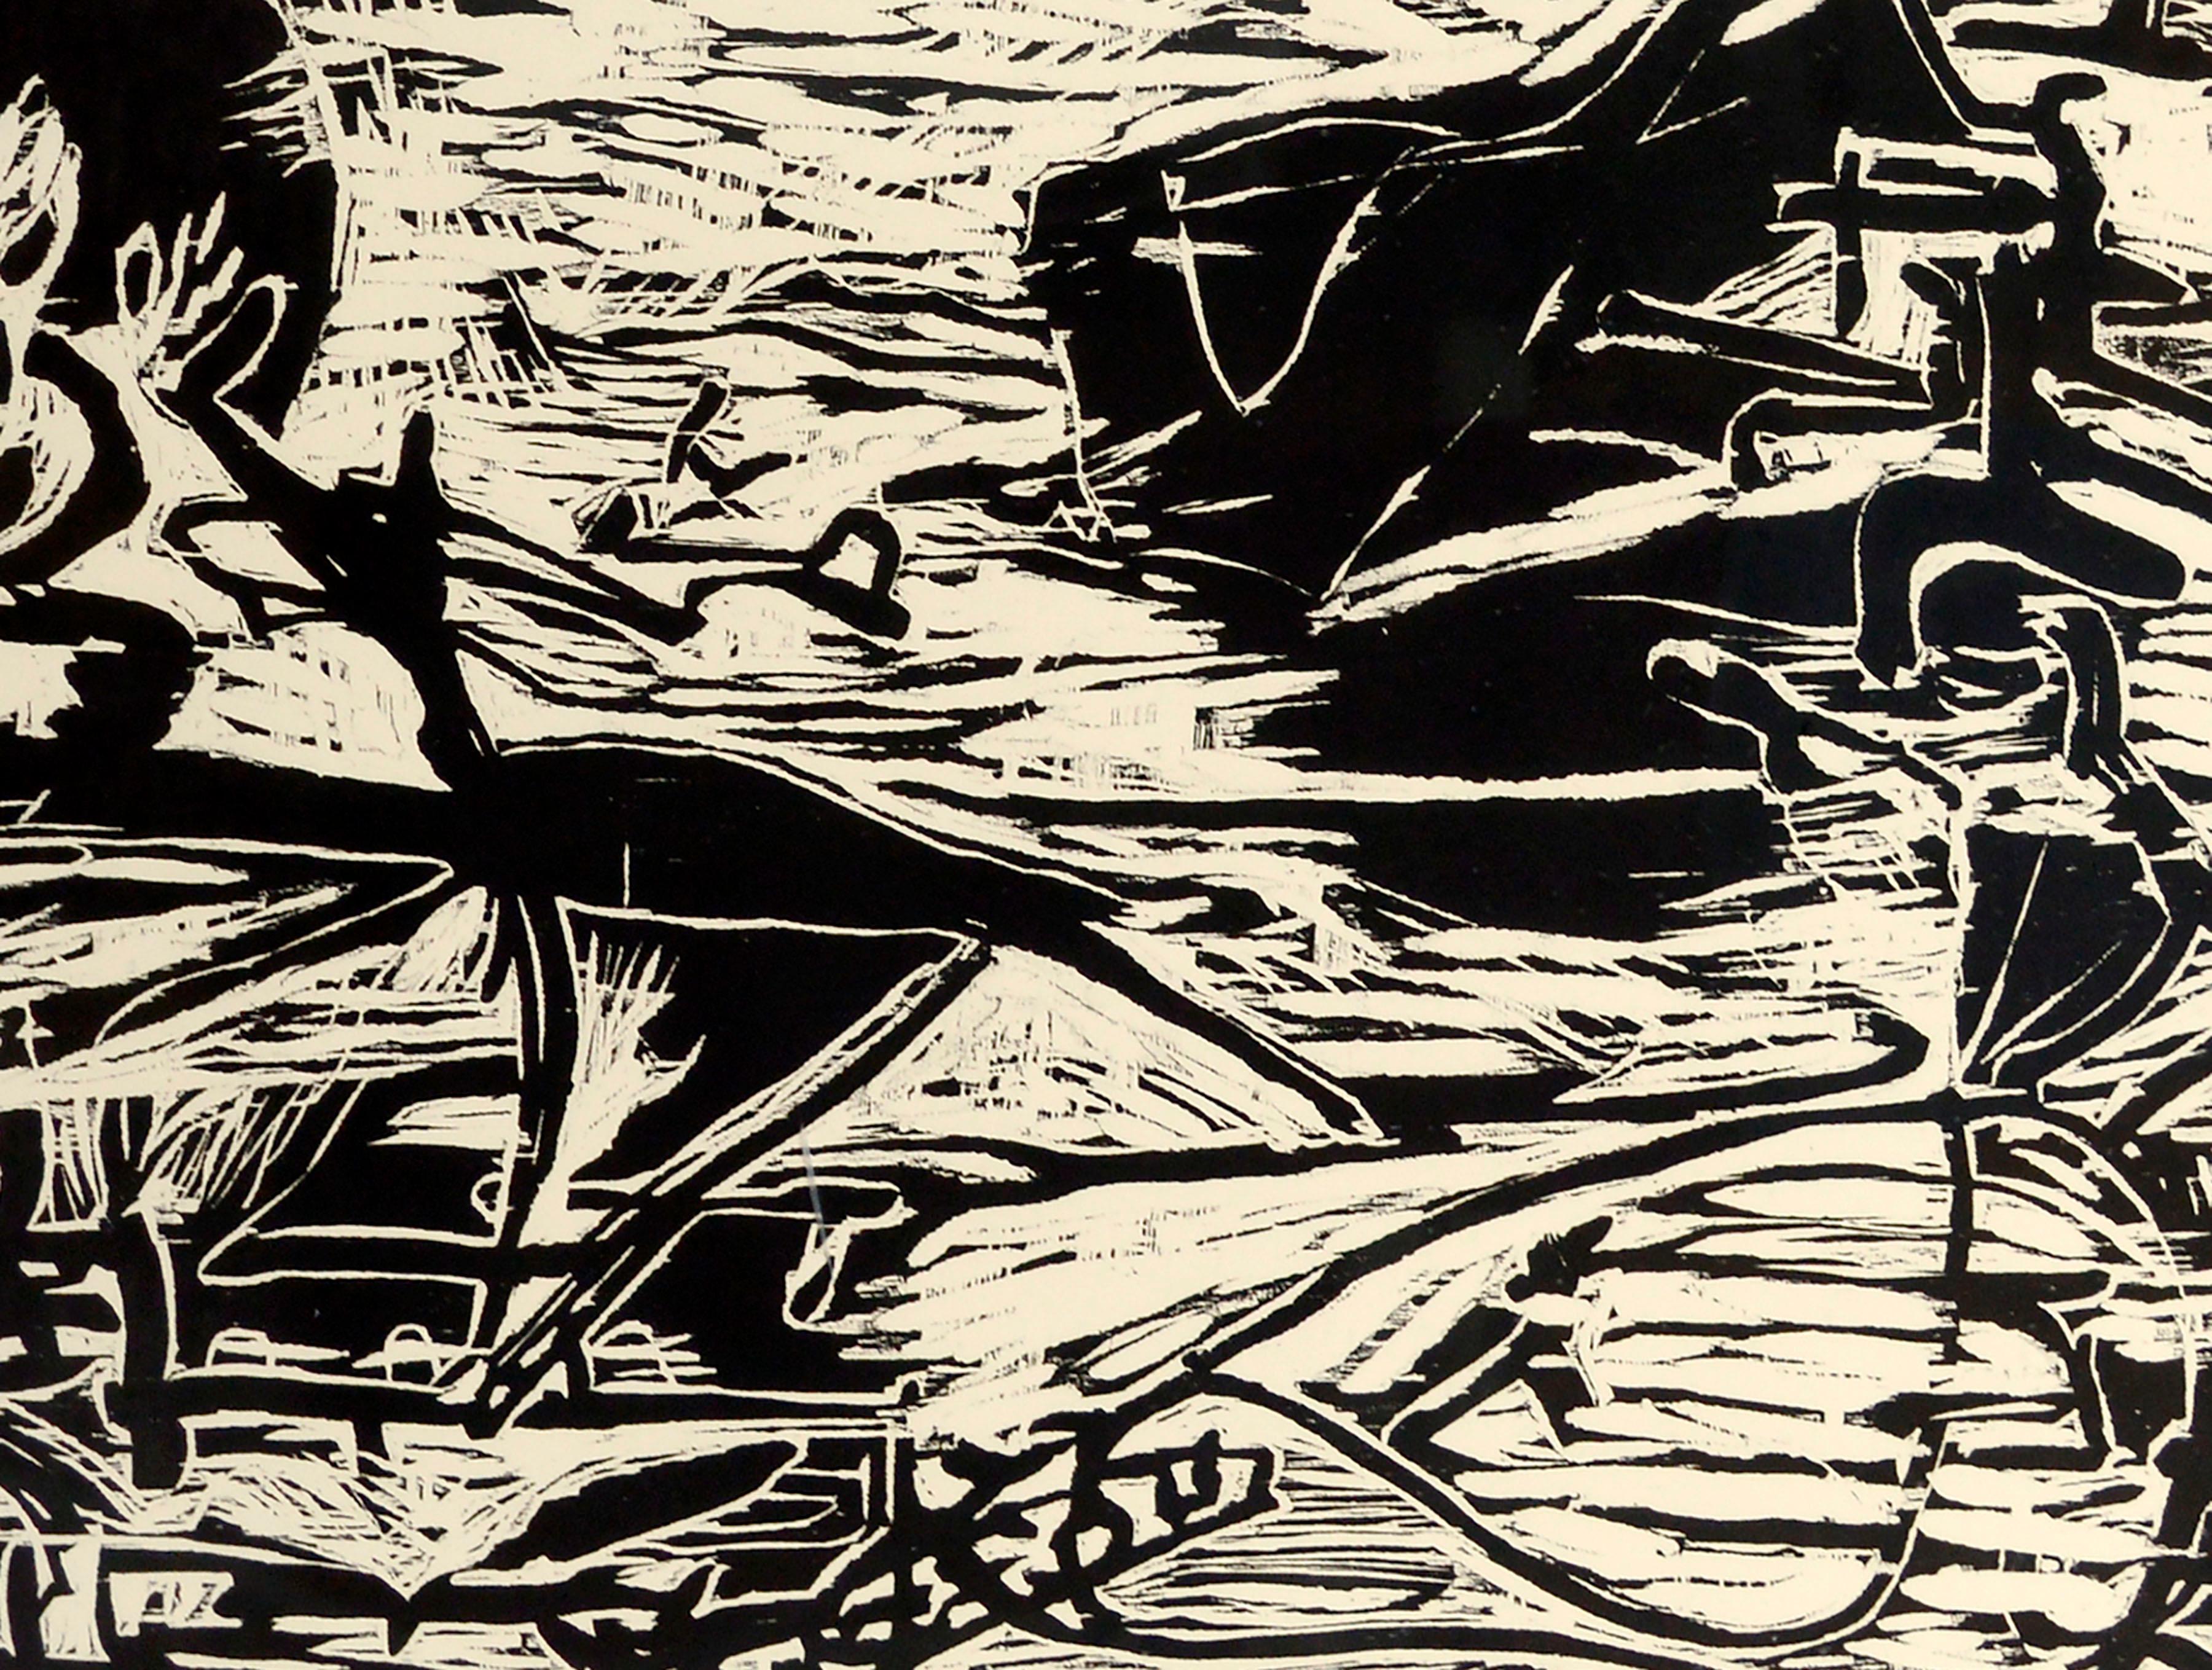 Großformatiger Holzschnitt in limitierter Auflage einer abstrahierten Szene mit Landschaftselementen und groben figuralen Formen wie einem Hund, einem Haus und einem Baum, die aus einer chaotischen linearen Abstraktion hervorgehen, von Michael